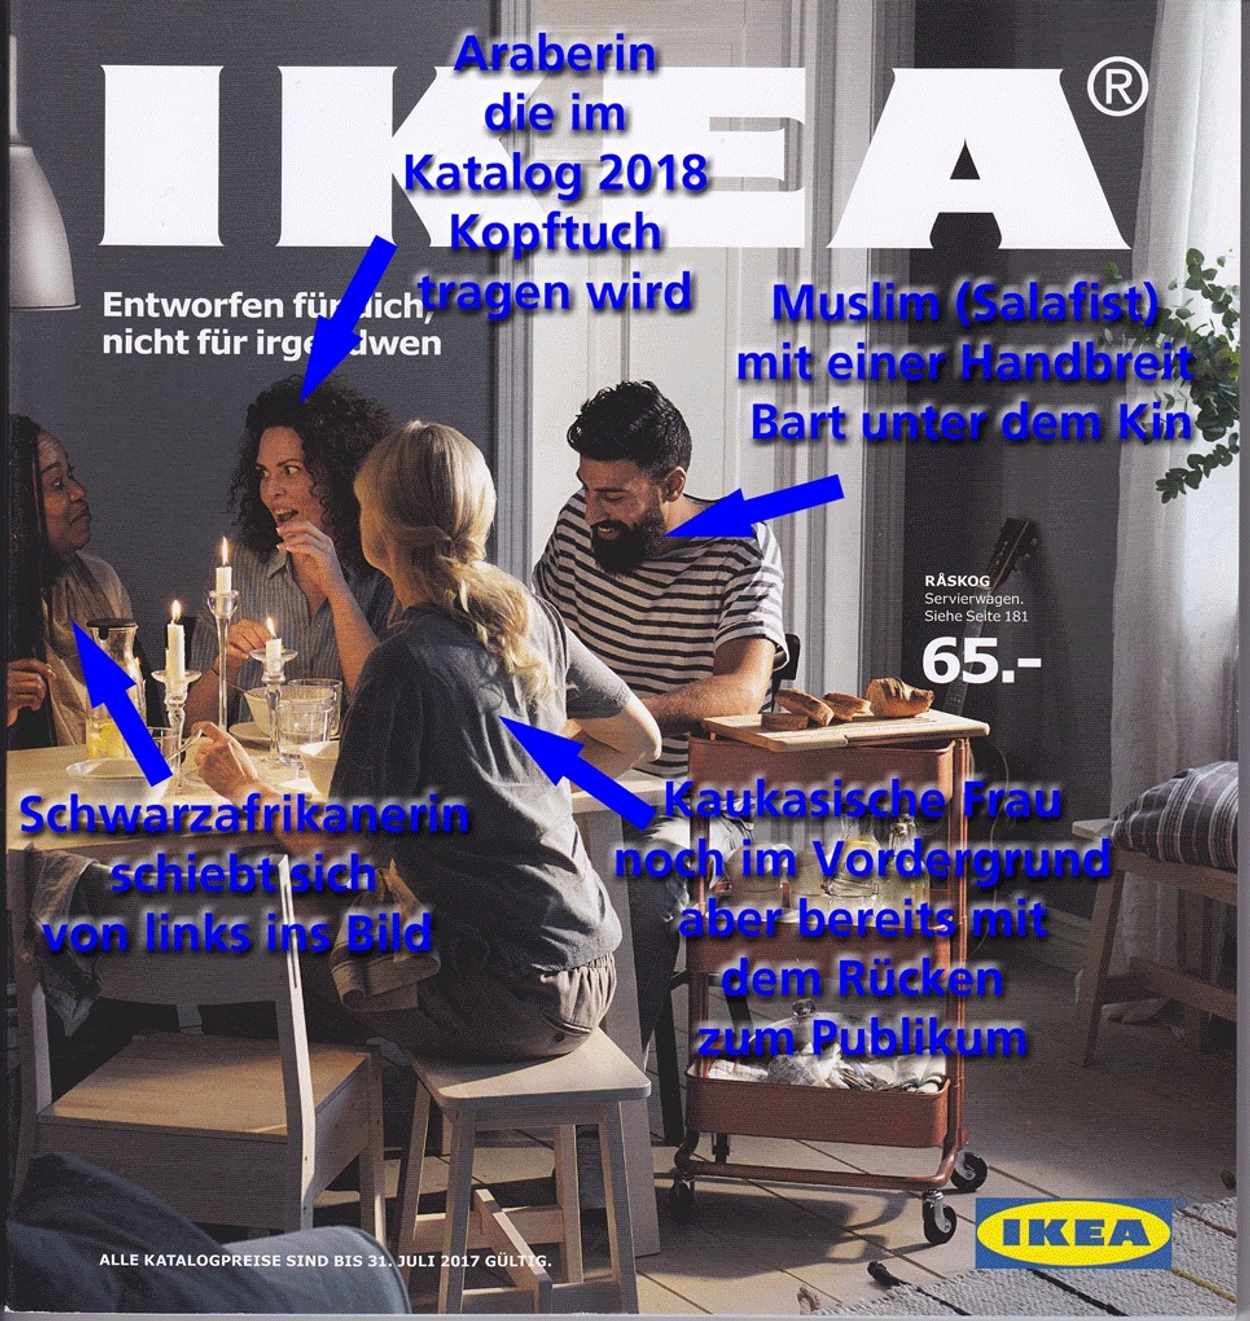 Meander Vervagen Jood De IKEA-catalogus en de idiote waanbeelden van de 'bezorgde burger' - Joop  - BNNVARA